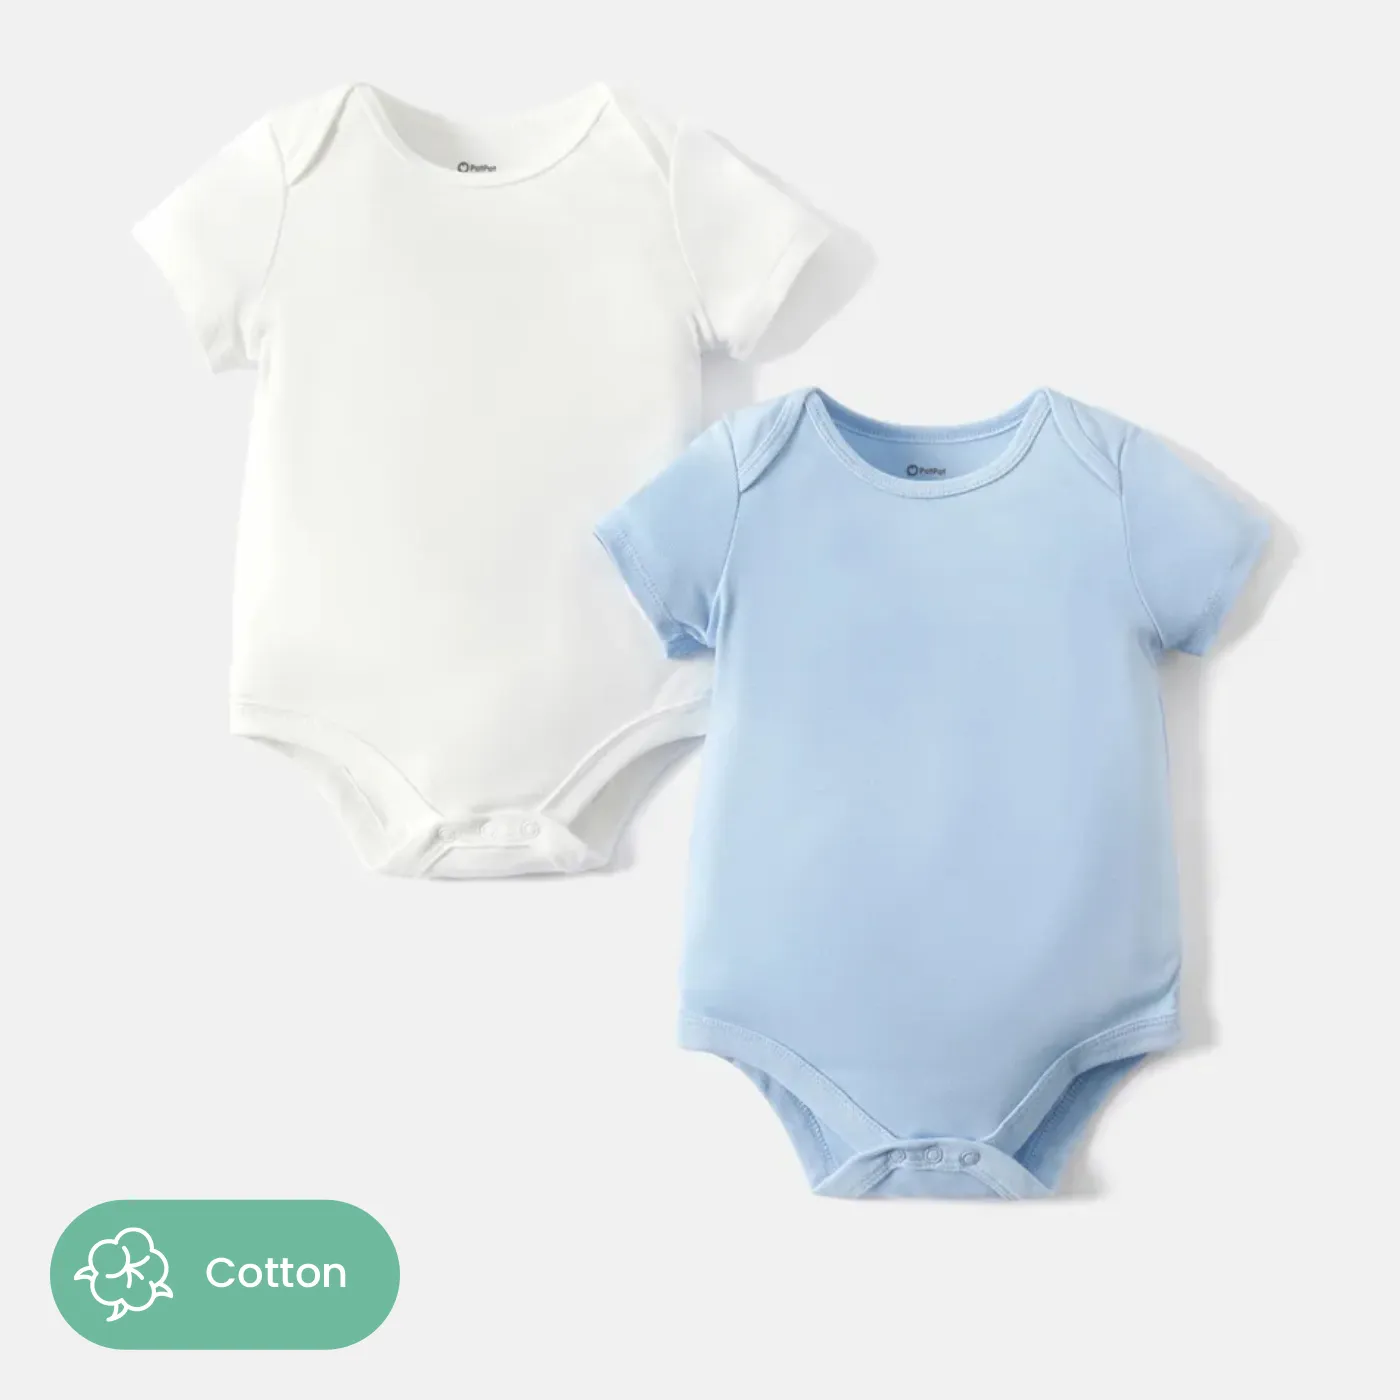 2 件裝女嬰/男嬰 100% 純棉純色短袖連身衣